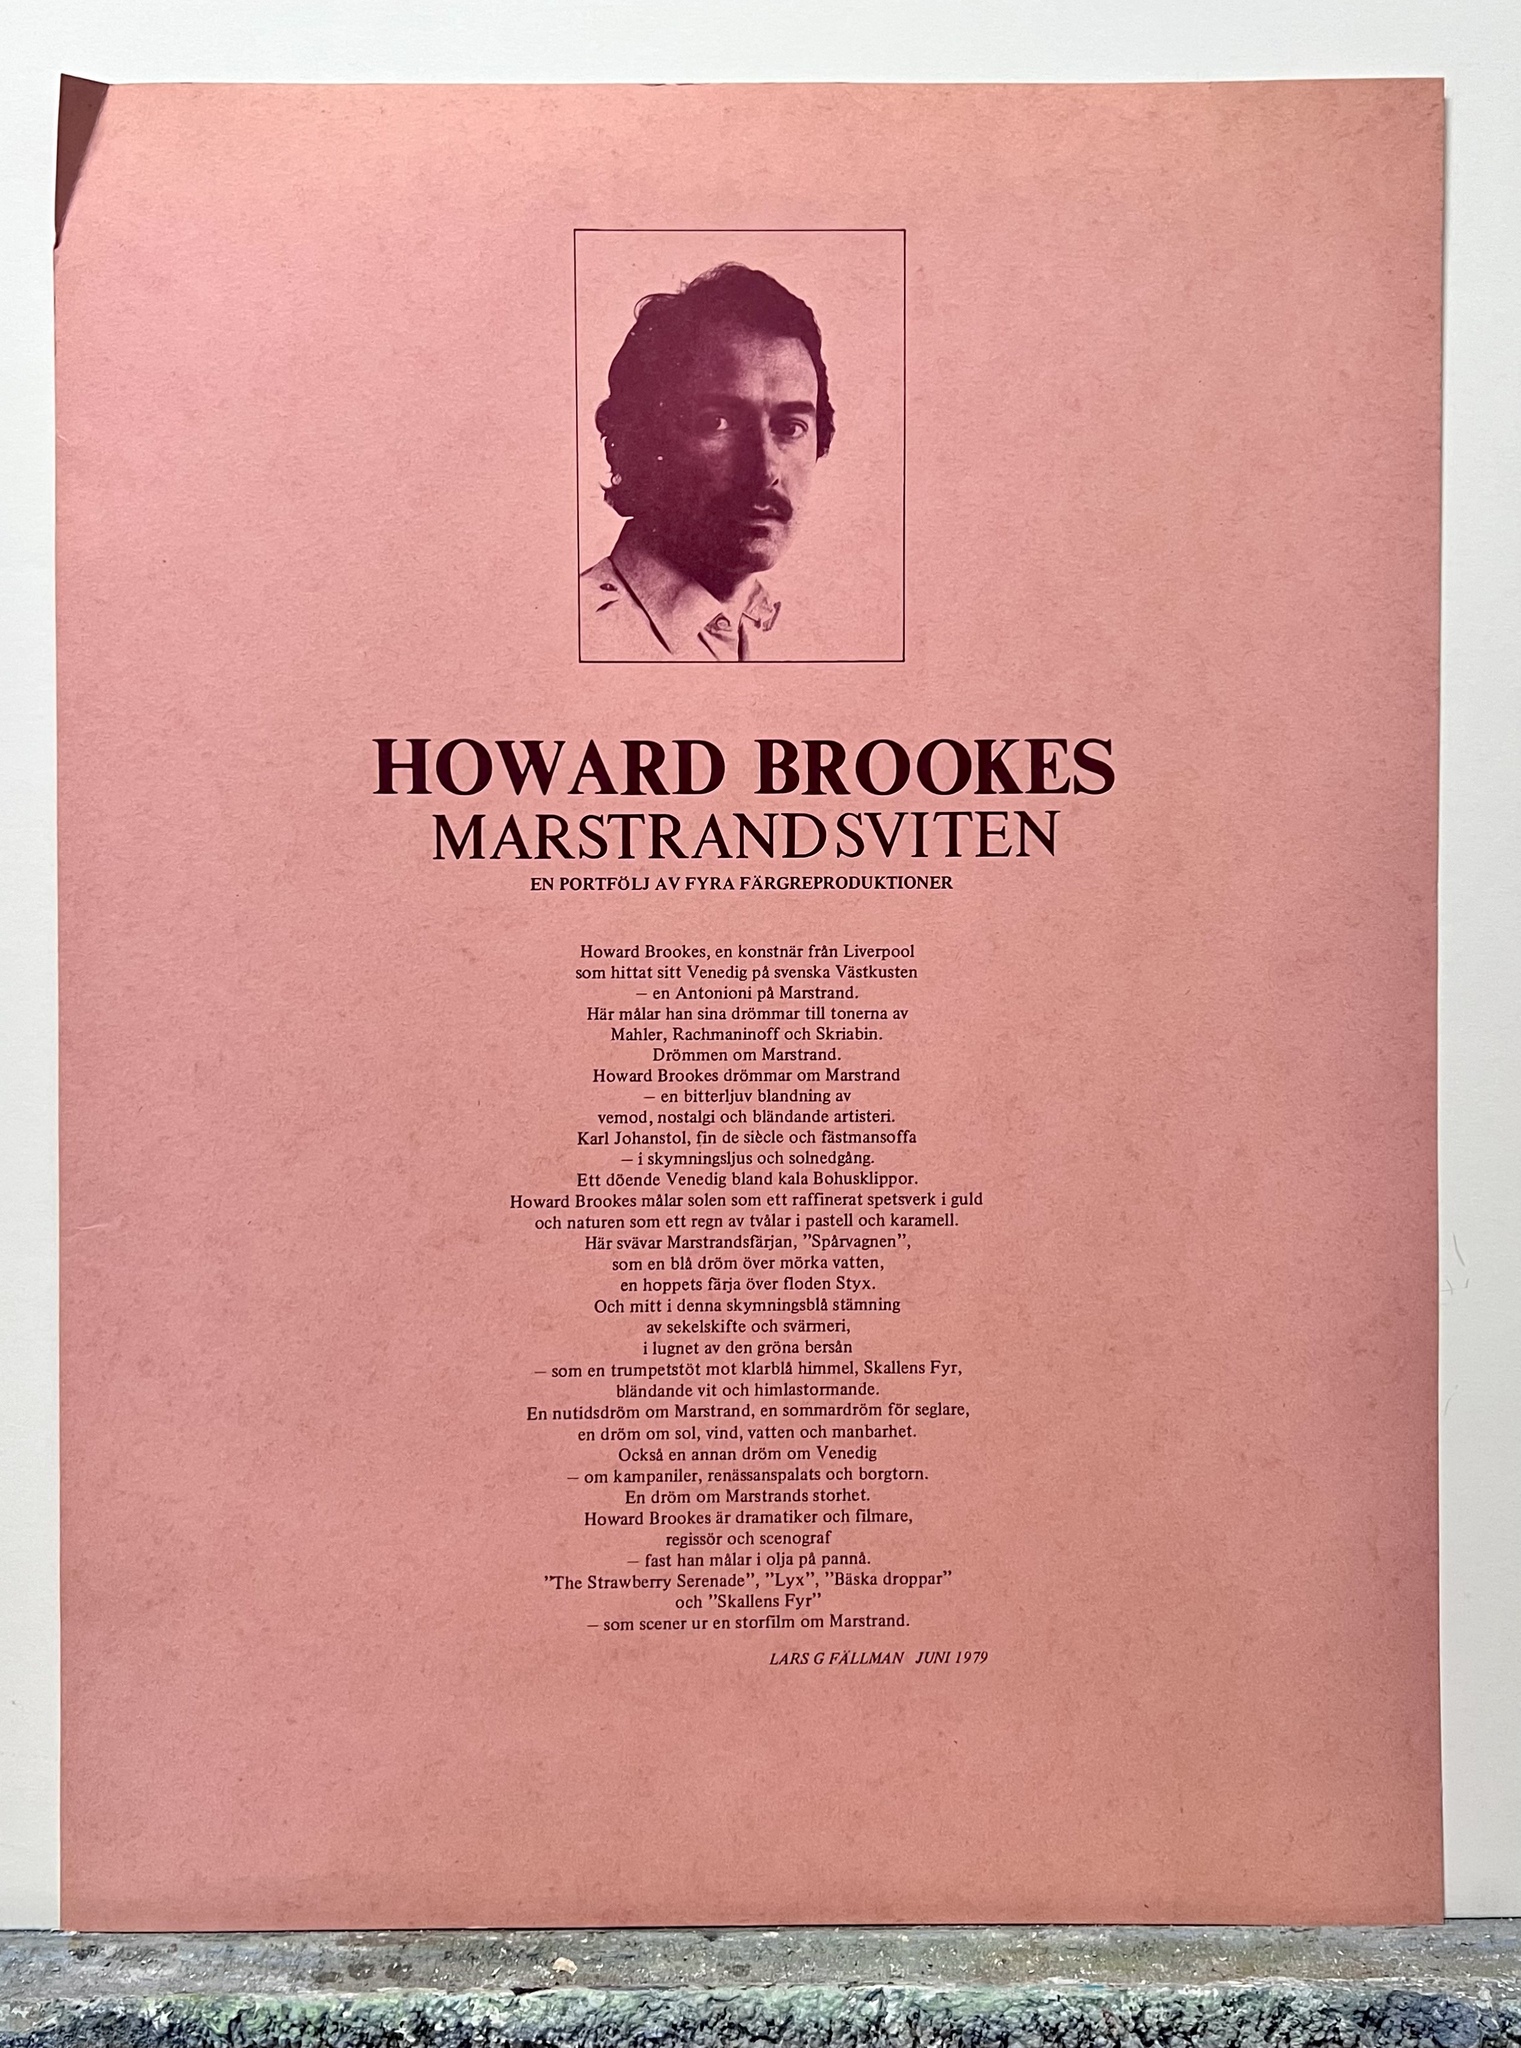 "Bäska Droppar" Reproduktion av Howard Brookes ur Marstrandssviten. 45x60 cm